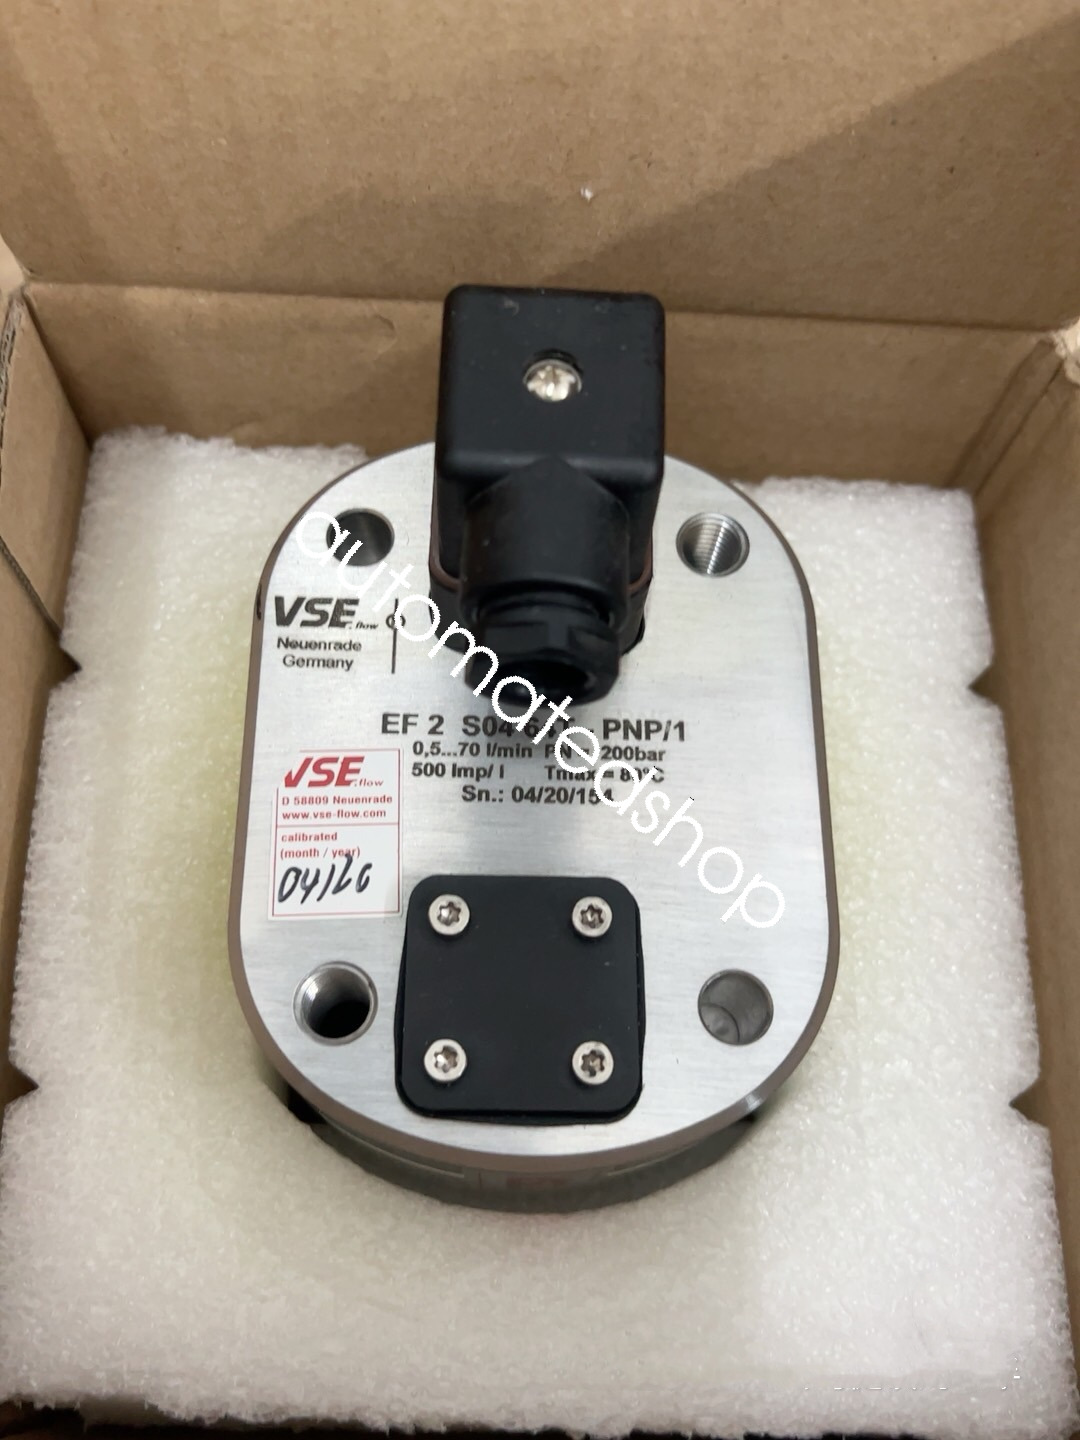 EF 2 S04 64T-PNP/1 VSE flowmeter brand new Shipping DHL or FedEX